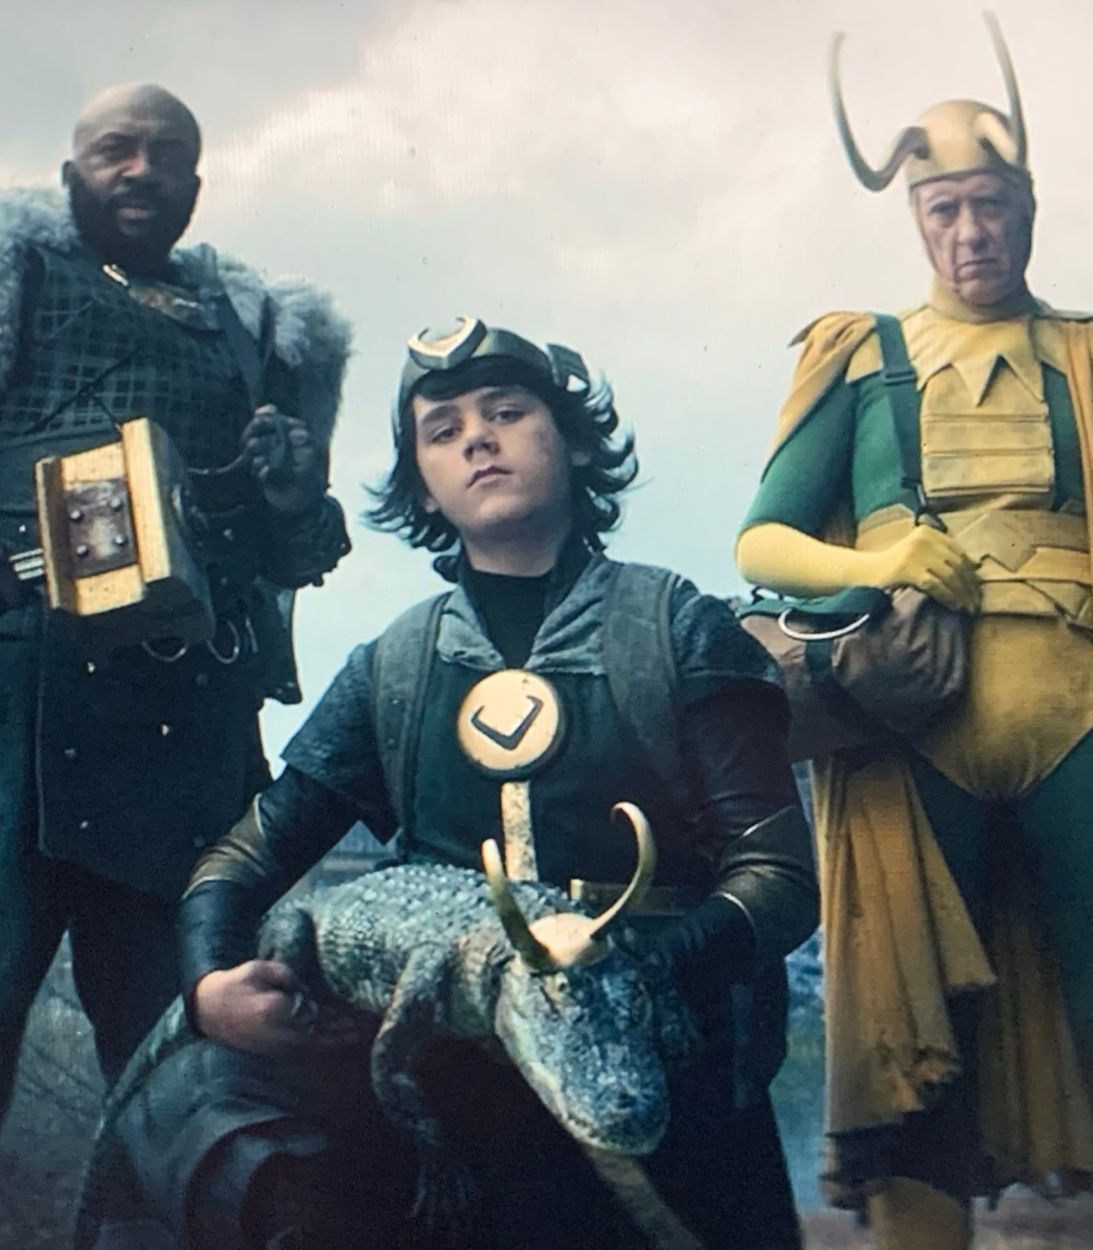 Classic Loki, Boastful Loki, Kid Loki and Alligator Loki